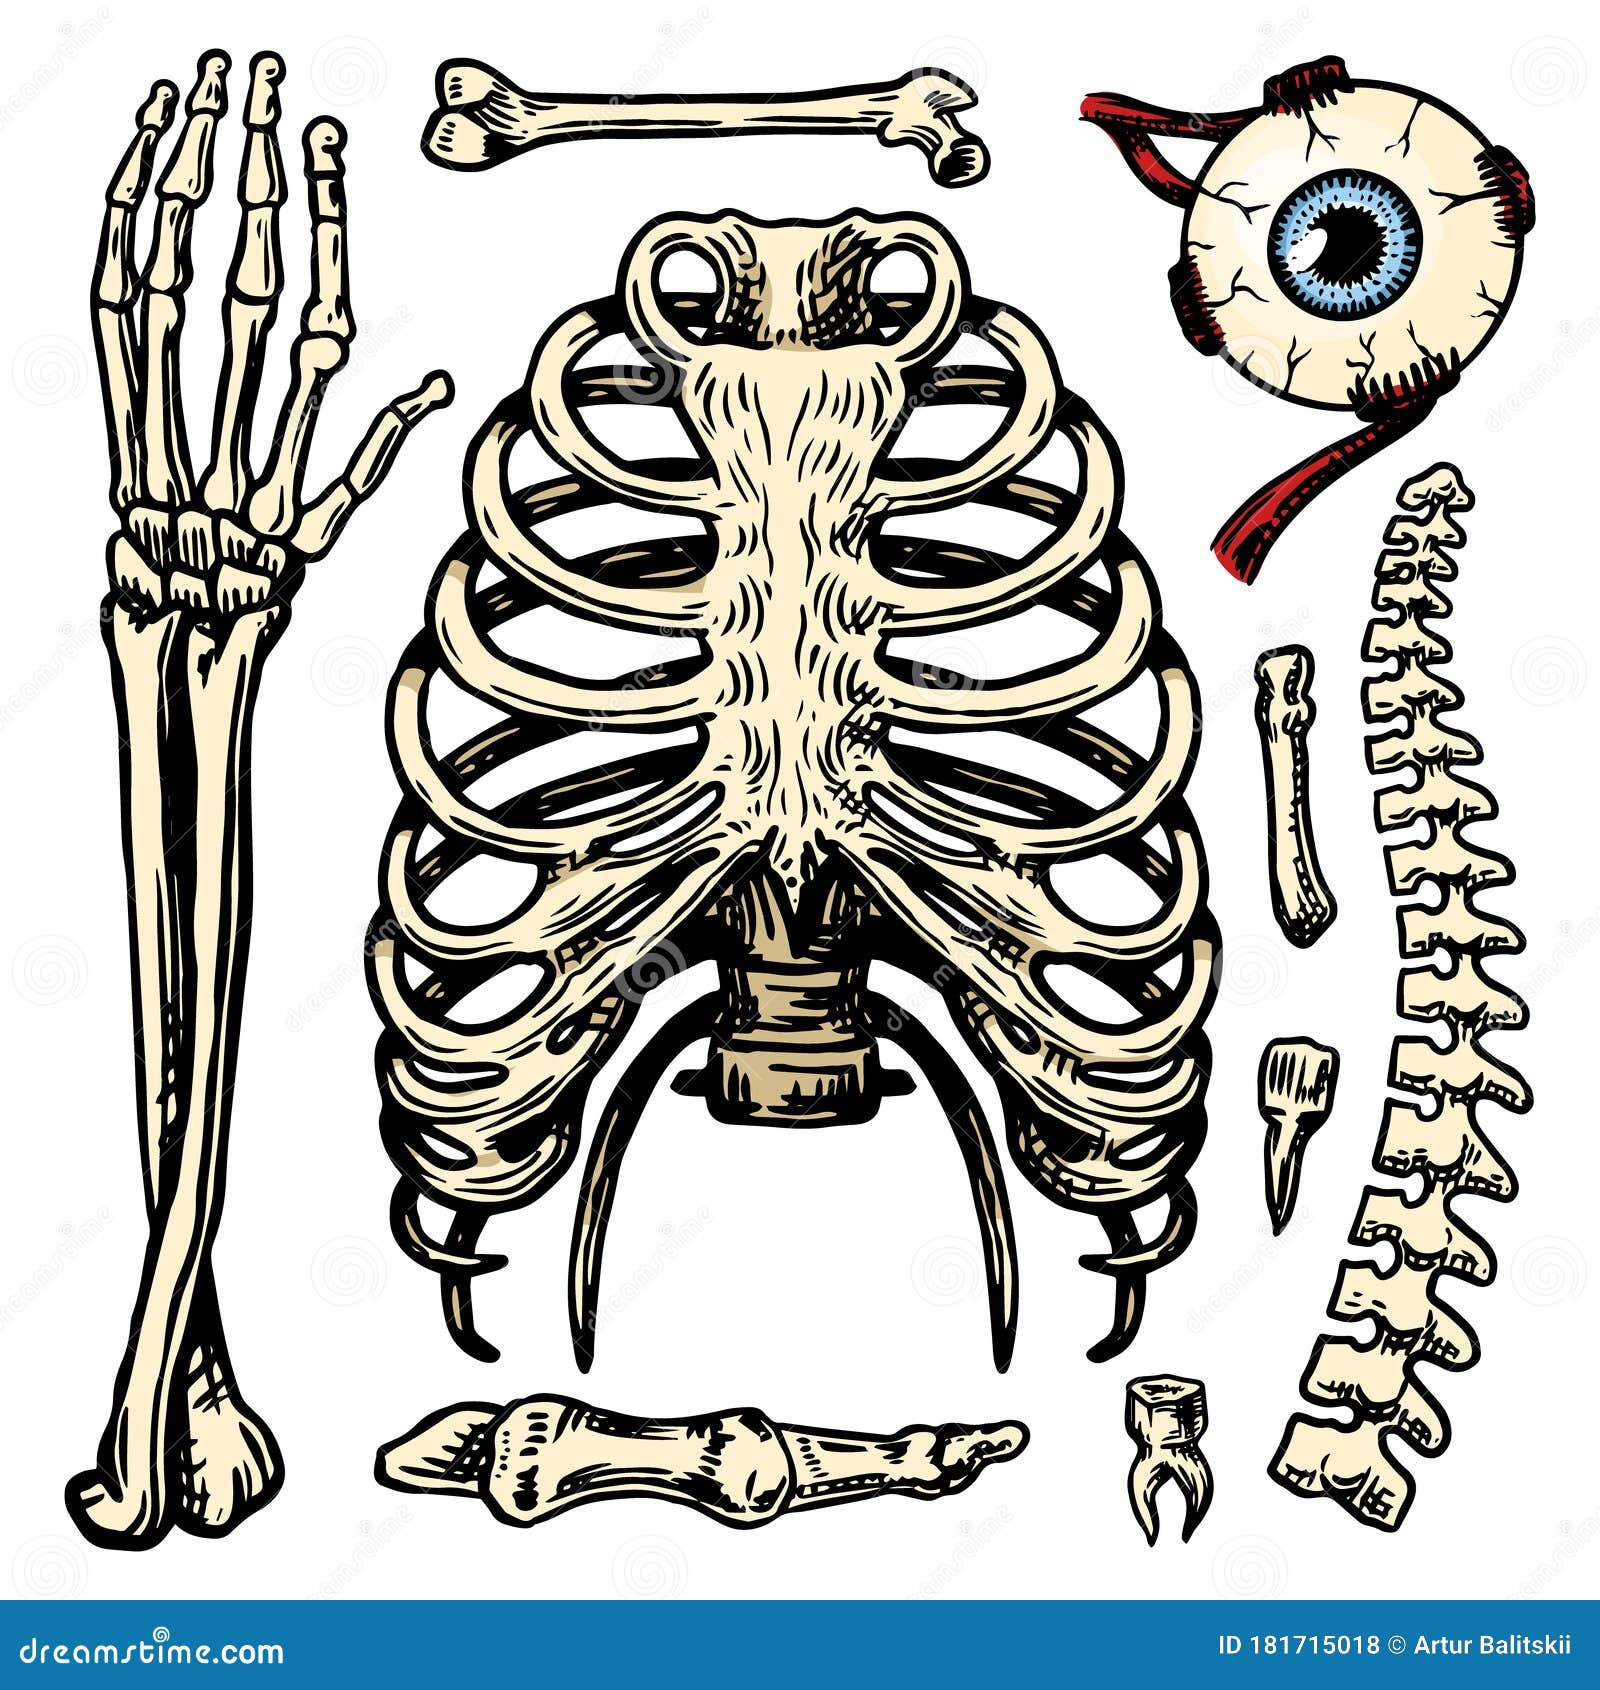 Анатомия скелет грудная клетка и таз. Скелет человека рёбра и таз. Позвоночник и грудная клетка. Набор костей человека.